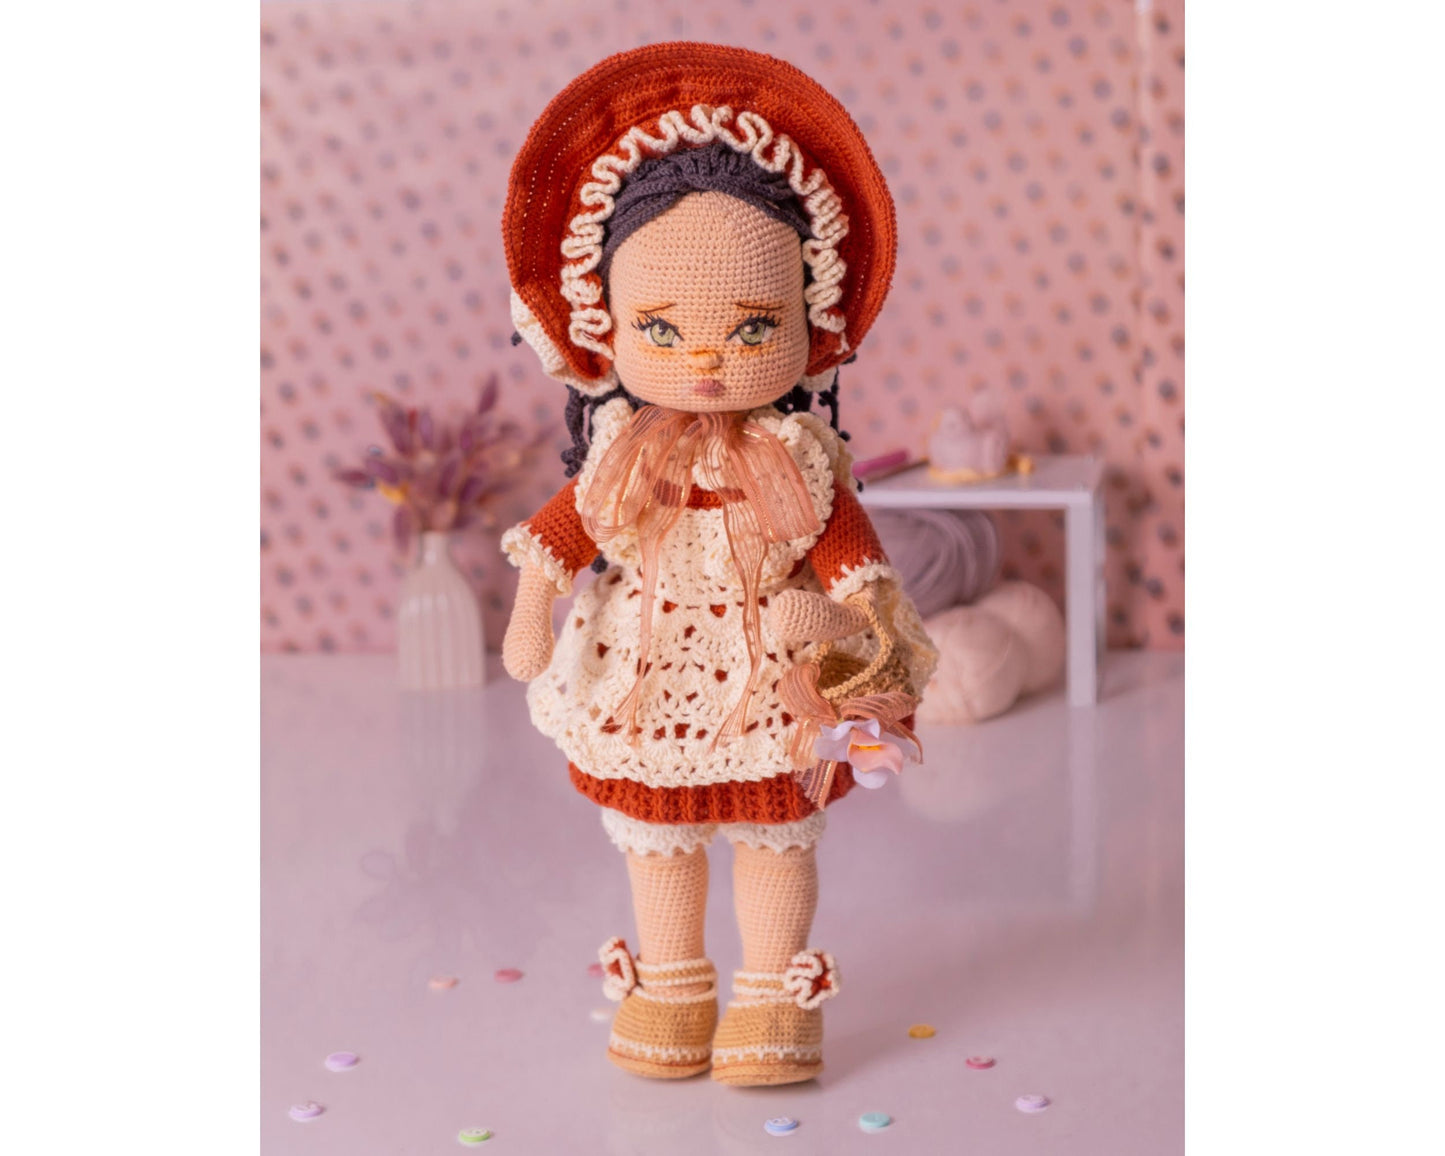 Crochet Doll, Vintage Lady Doll, Amigurumi Doll Finished